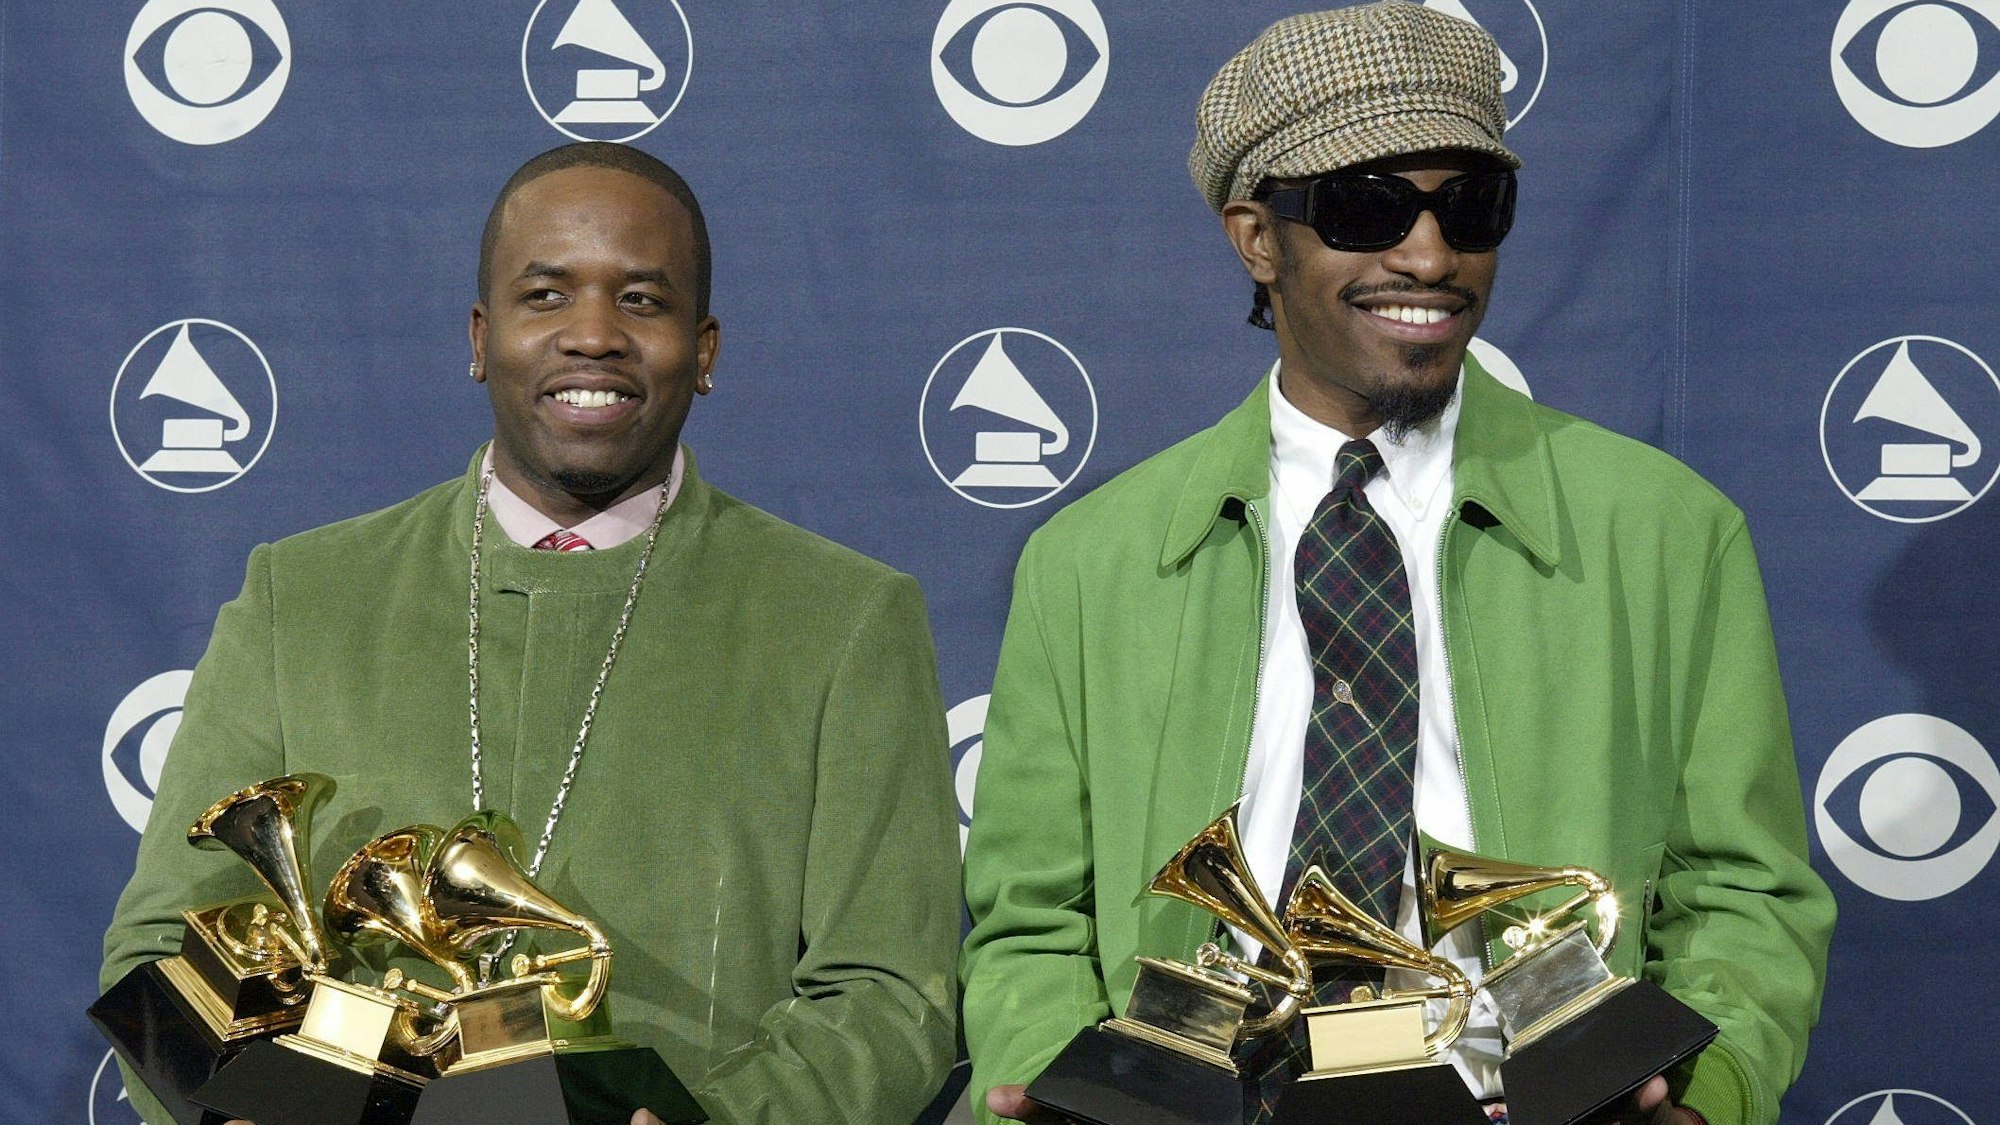 Haben bei den Grammy Awards abgeräumt: Big Boi (l.) und Andre 3000 von Outkast.